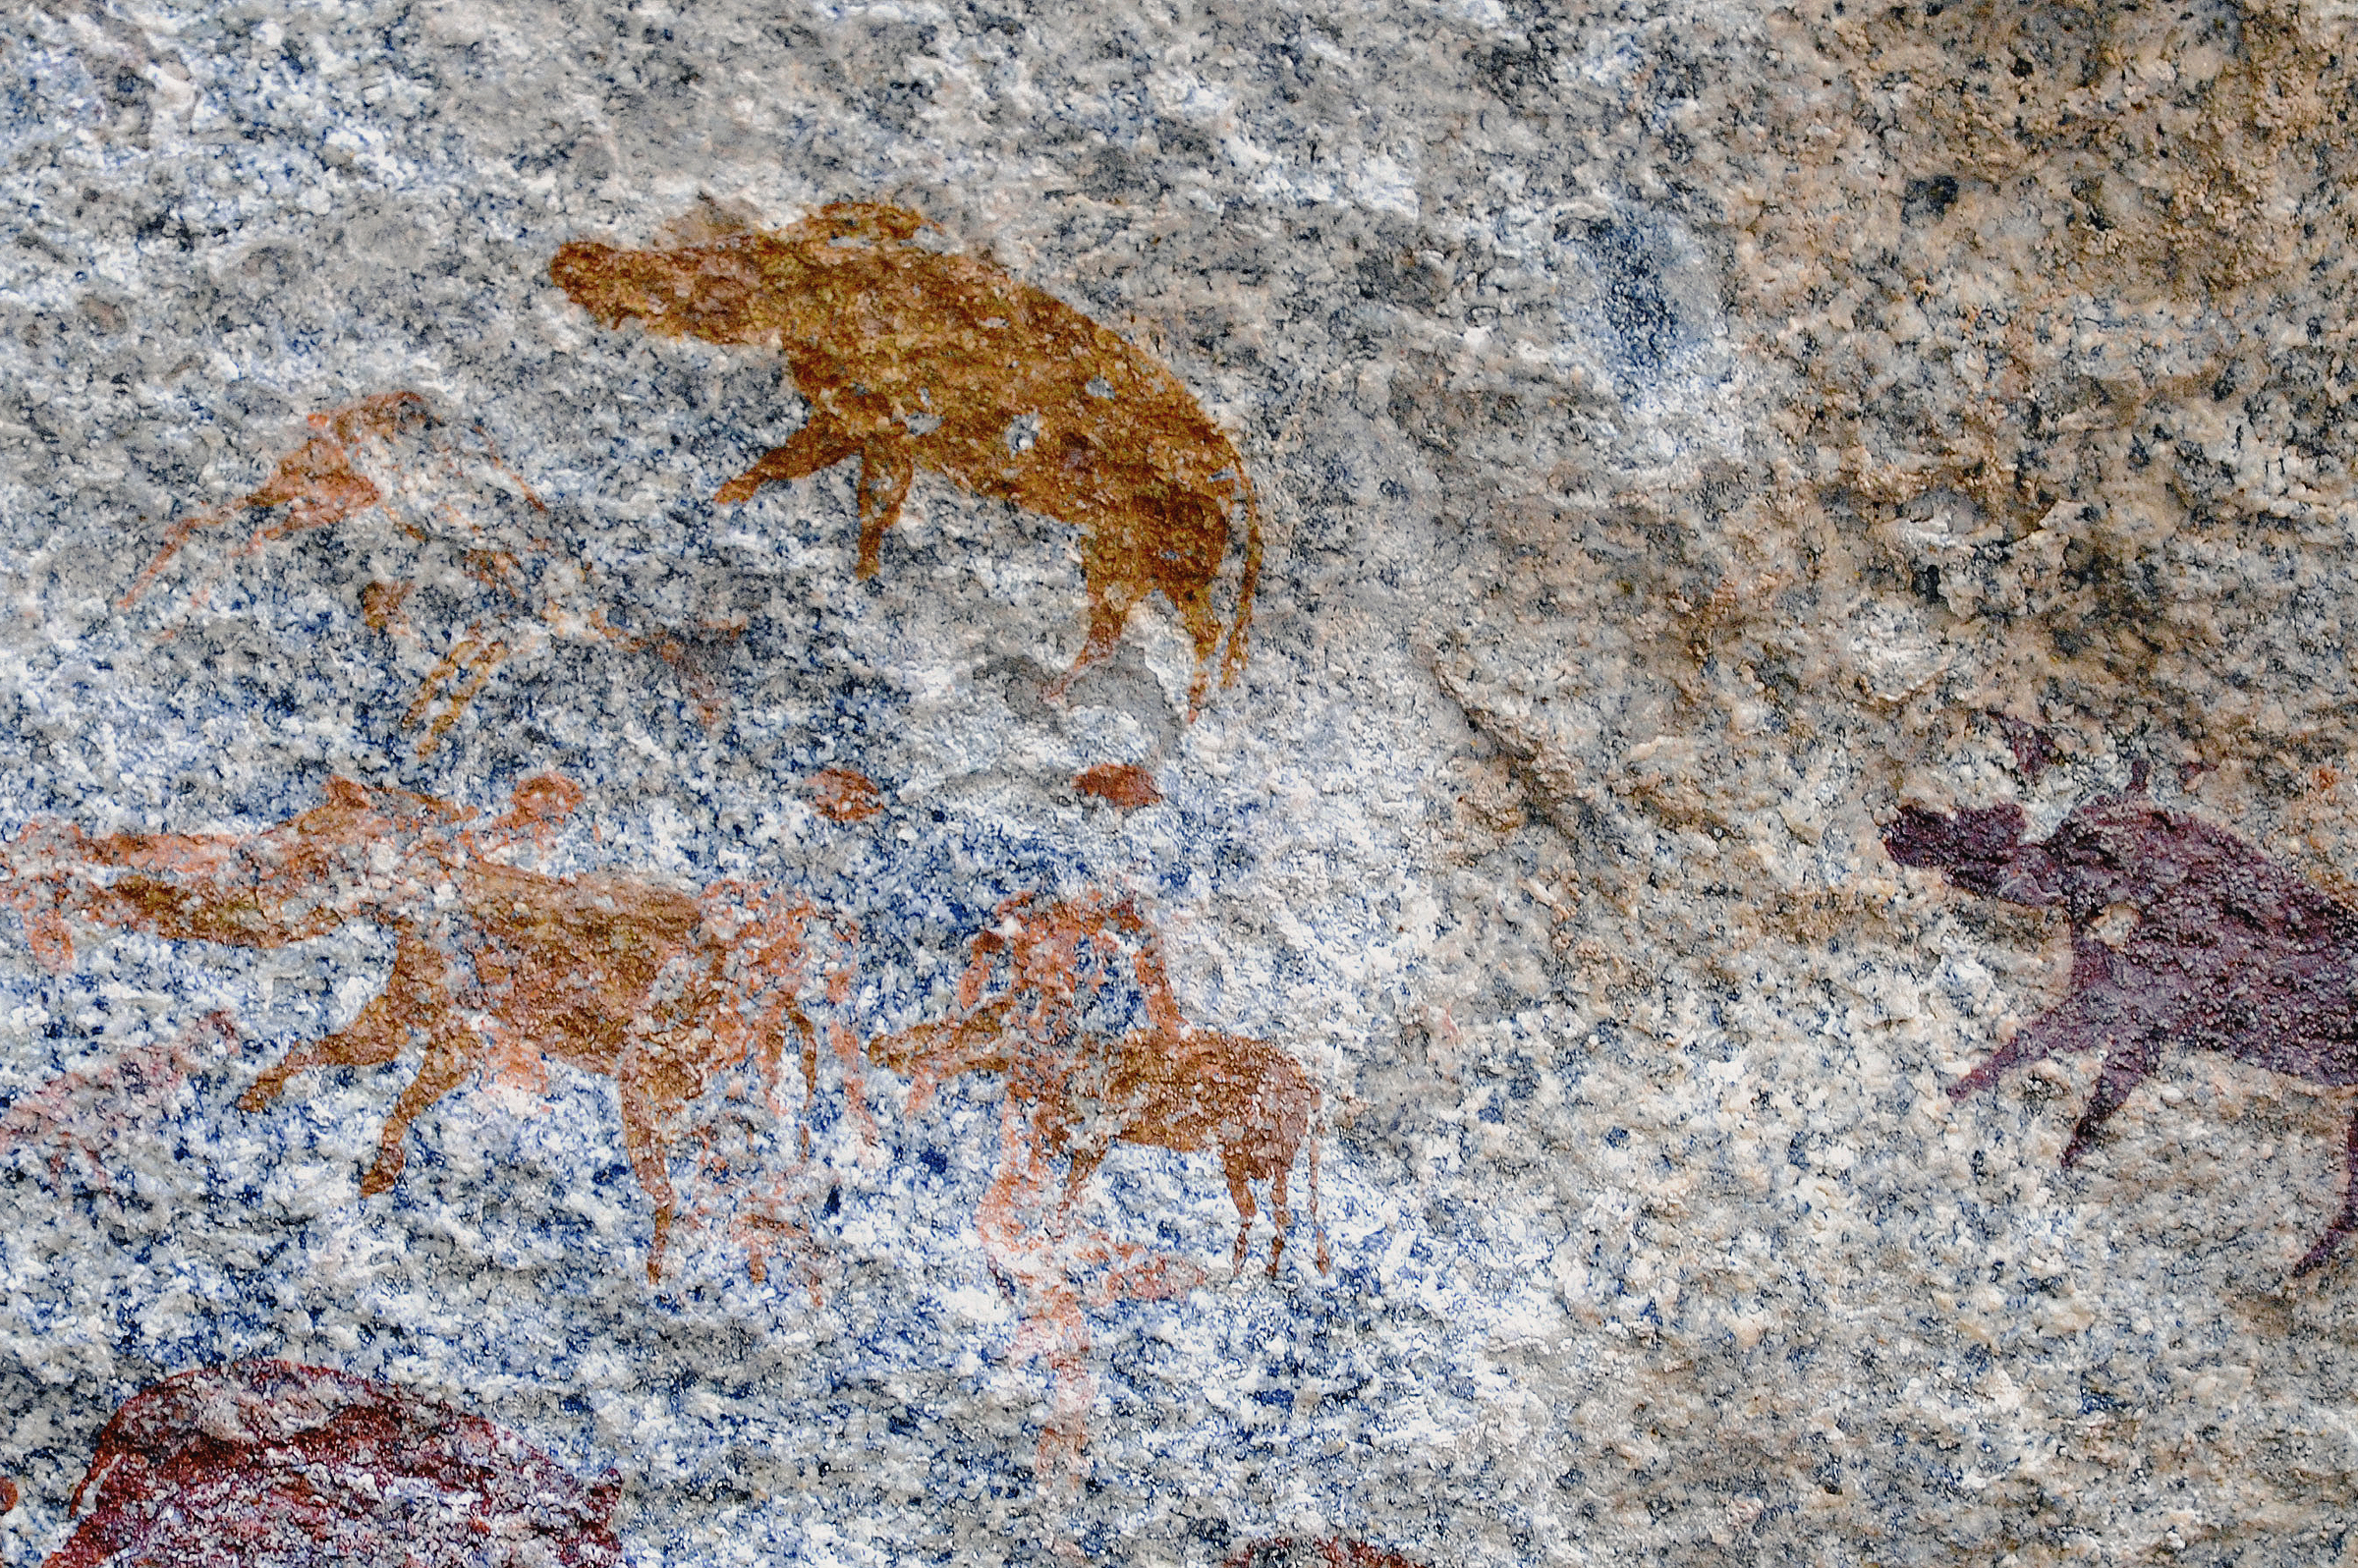 Bushpigs Rock Art Markwe Cave Zimbabwe Africa Archaeology